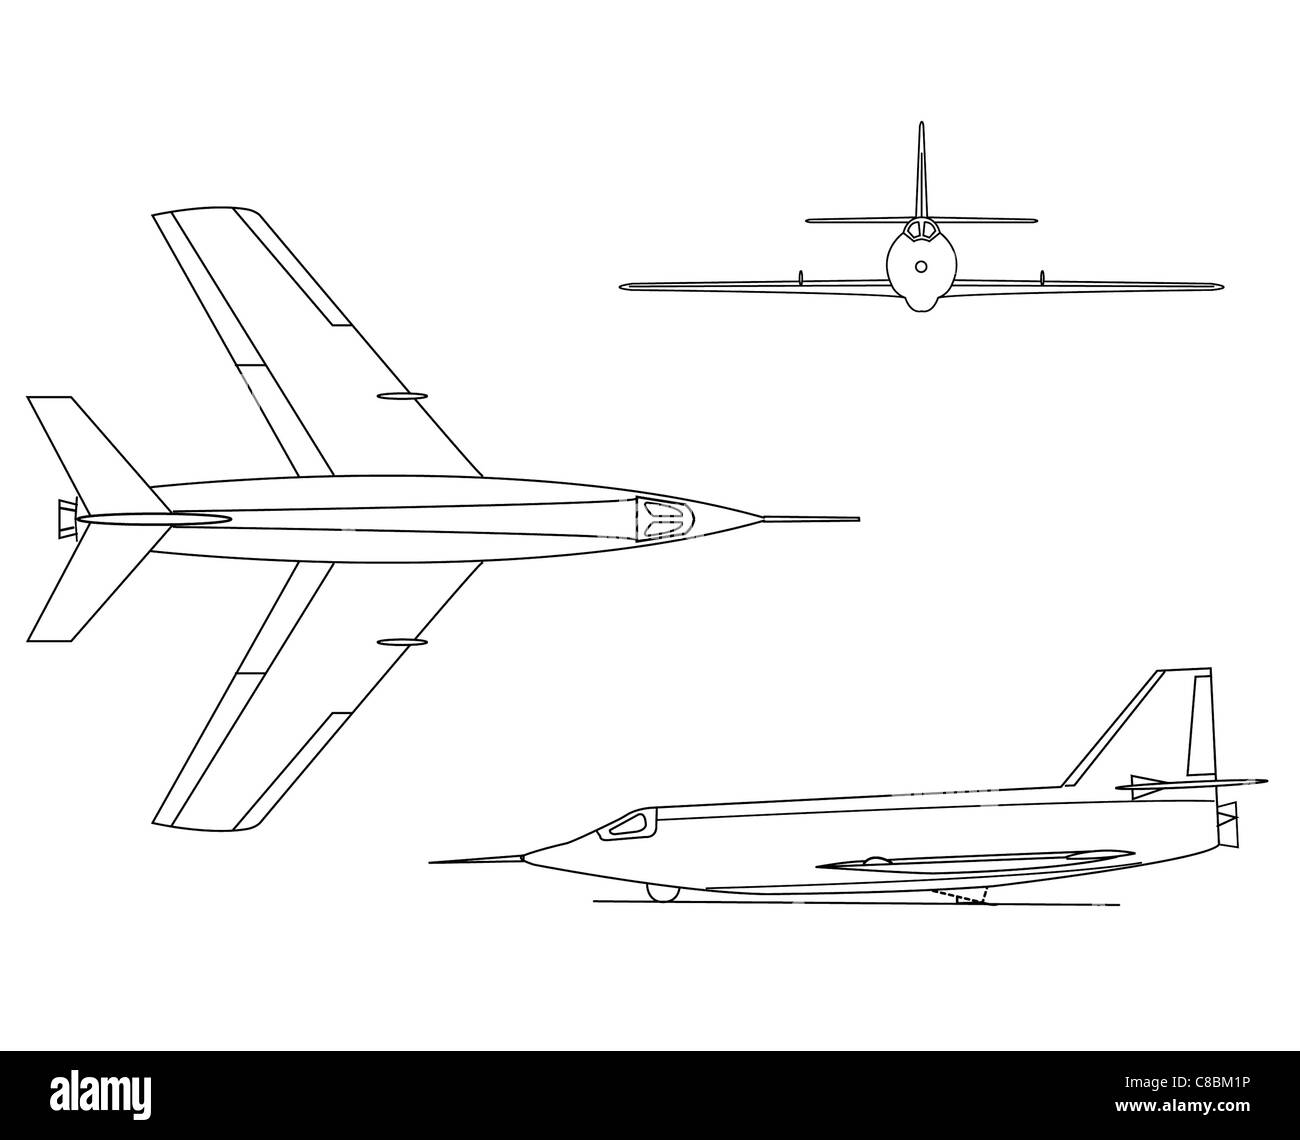 3 aviones ver ilustración X-2 Foto de stock